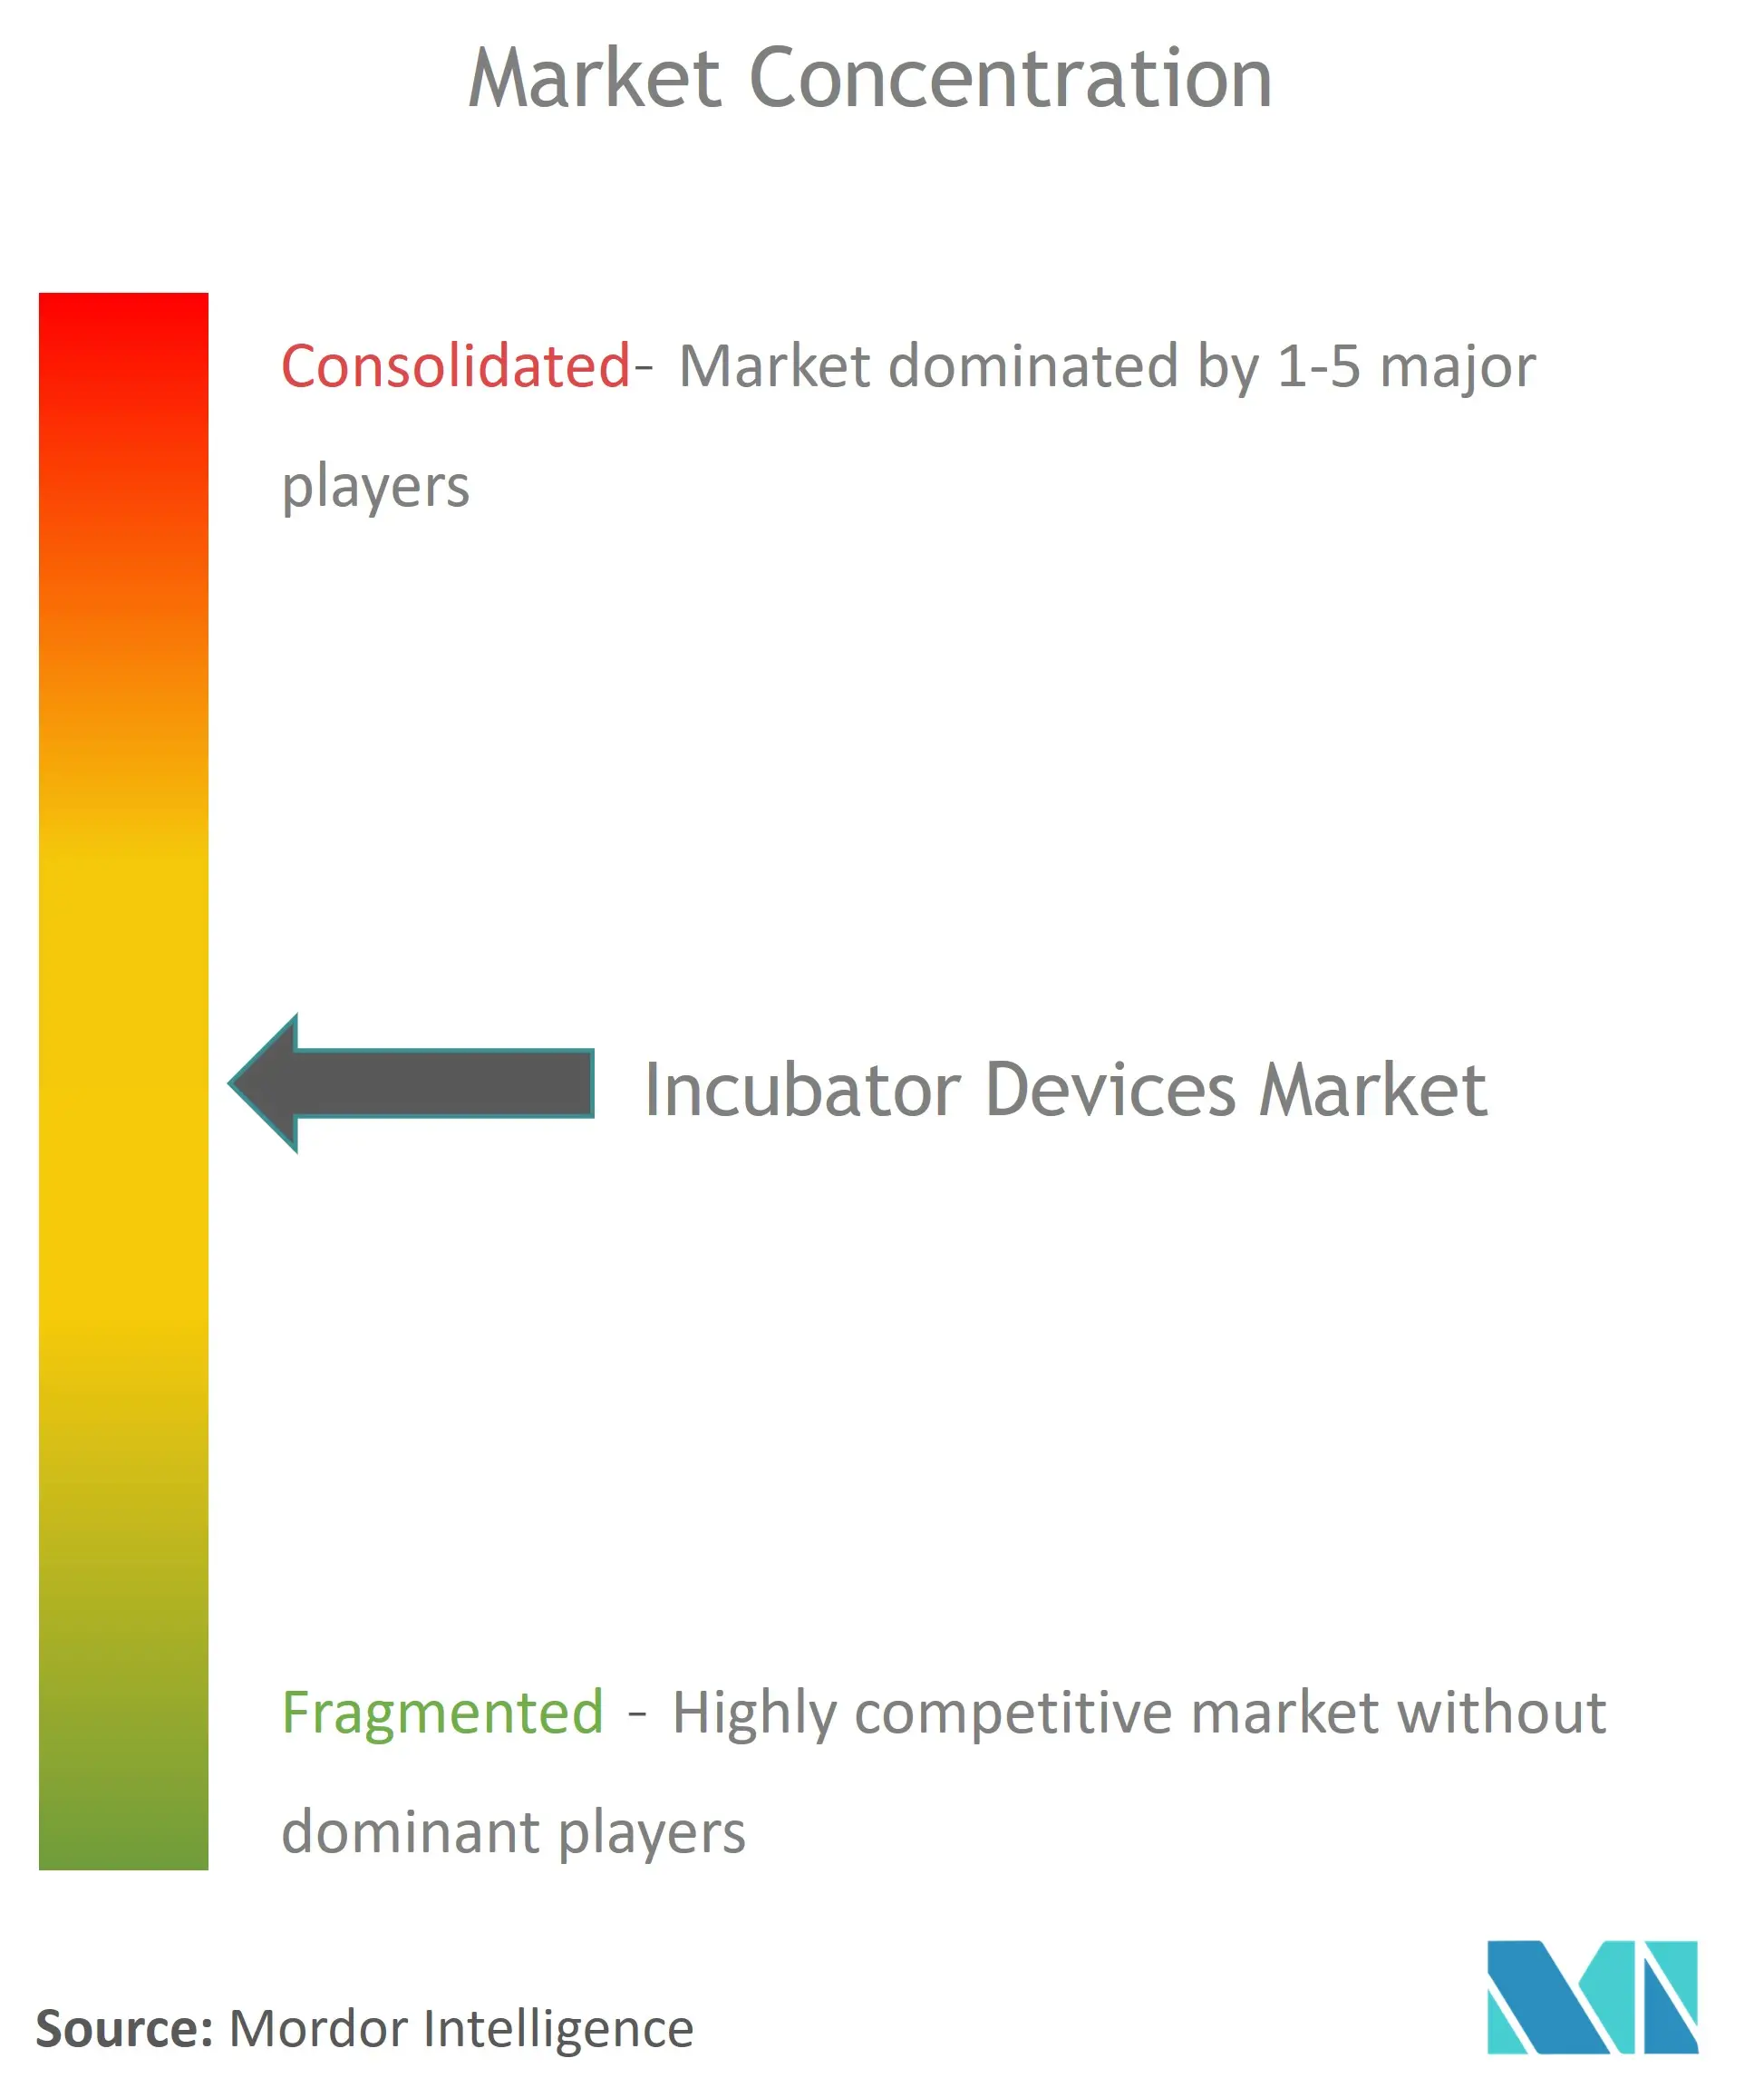 Incubators Devices Market Concentration